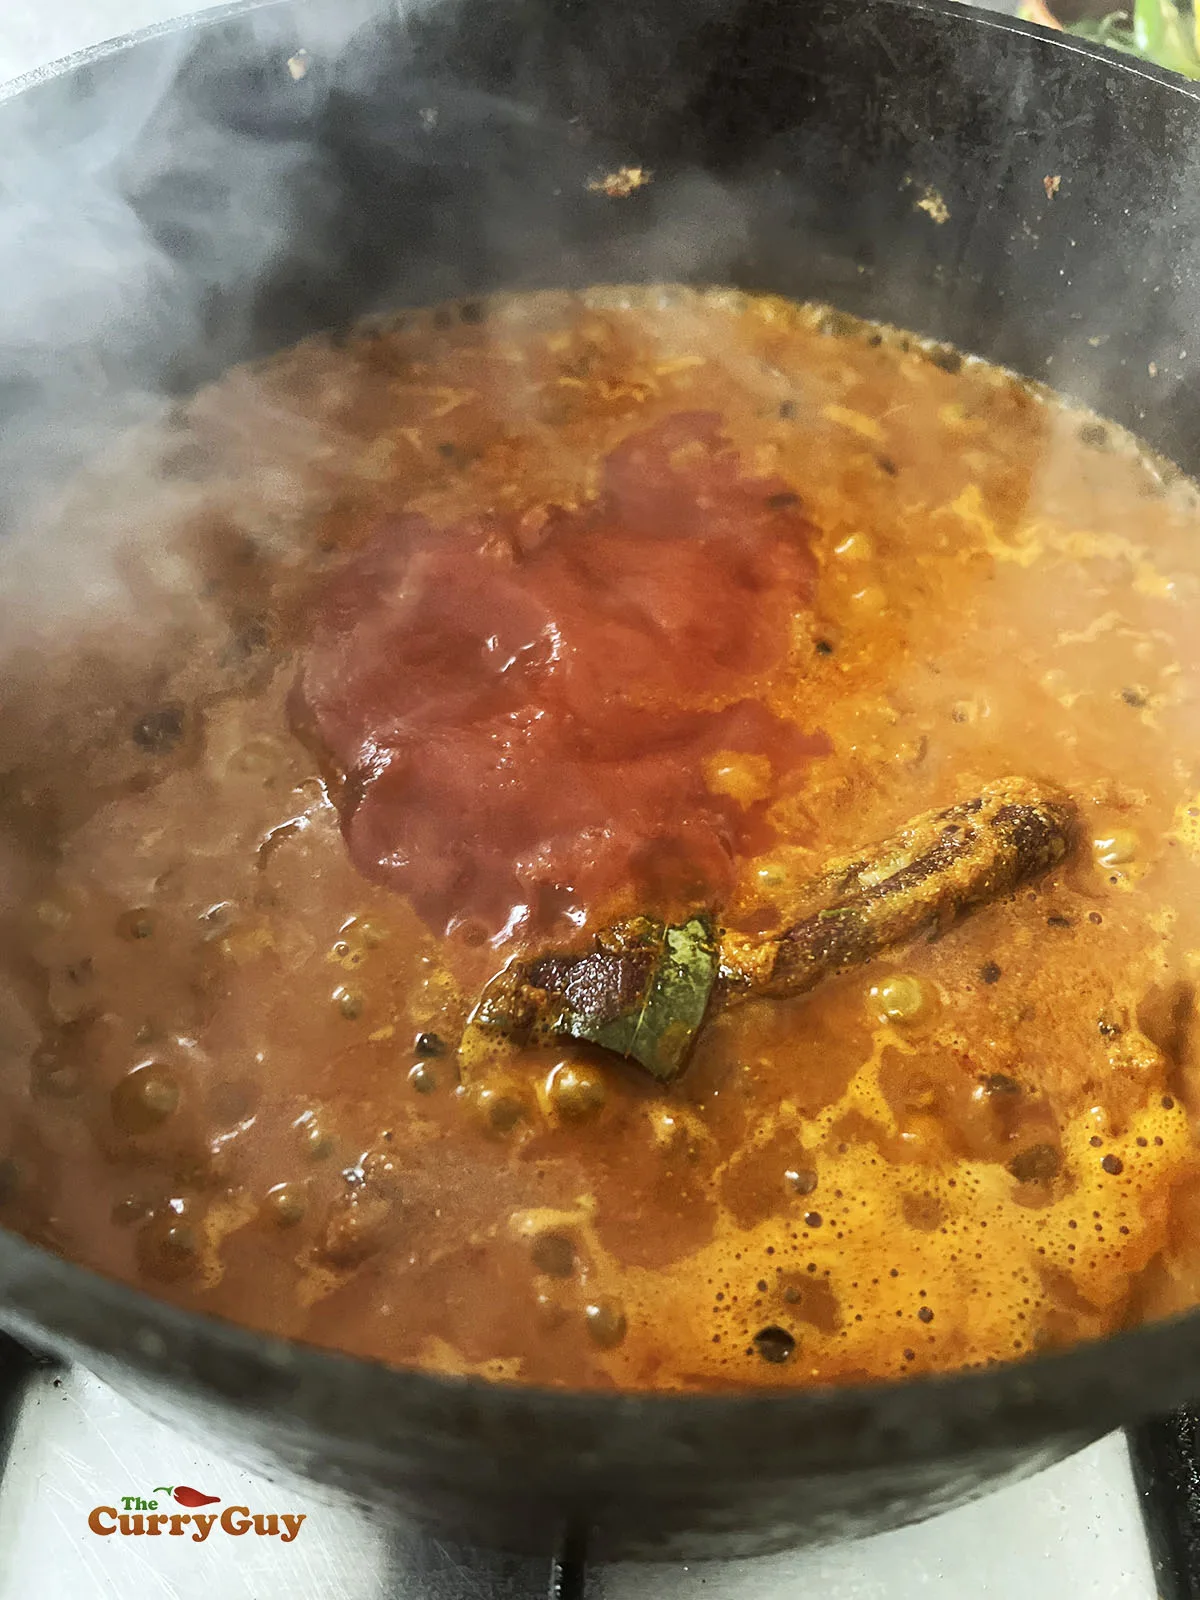 Adding passata to the pan